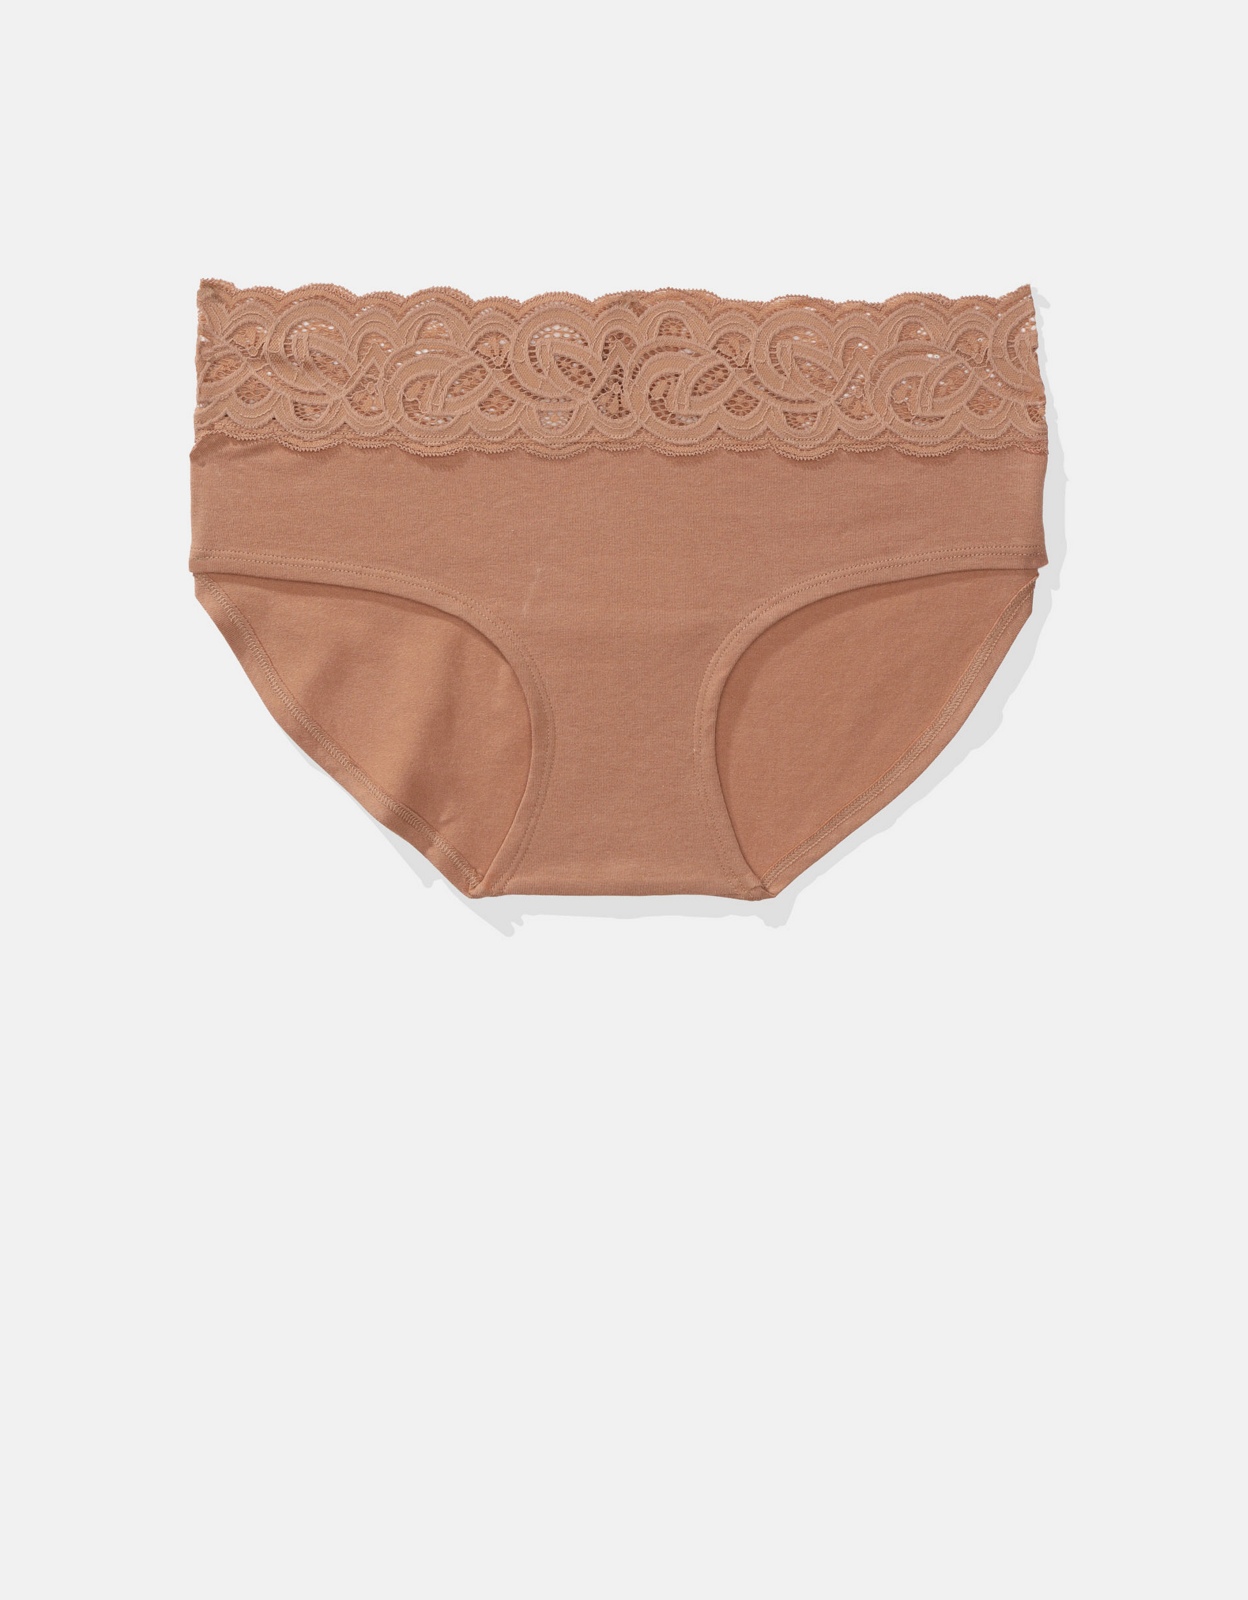 Aerie Island Breeze Lace Lurex Thong Underwear